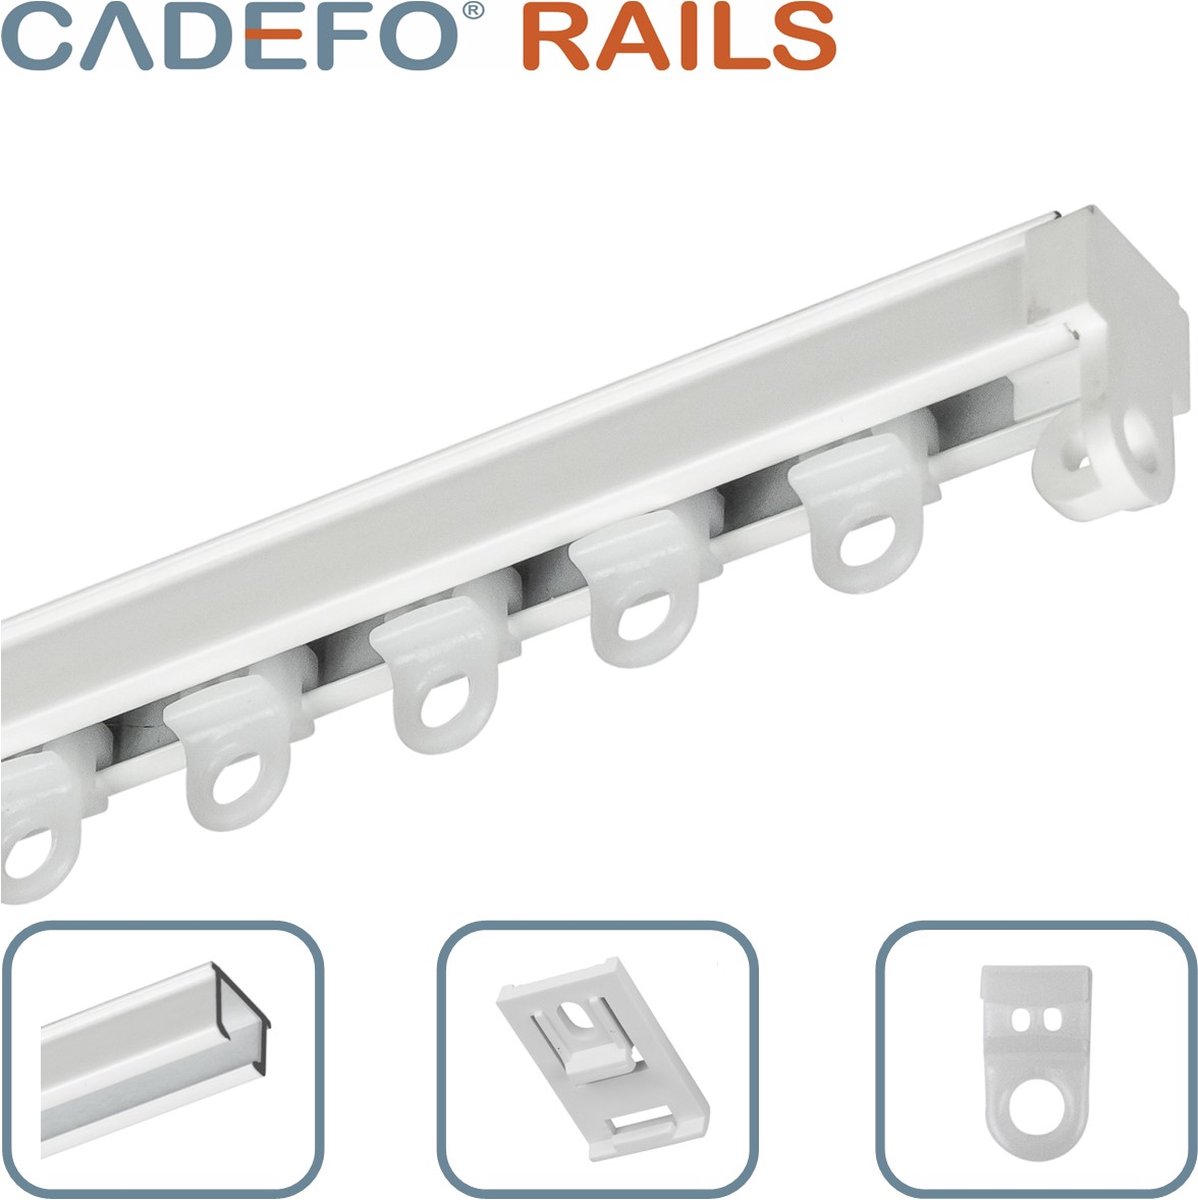 CADEFO RAILS (201 - 250 cm) Gordijnrails - Compleet op maat! - UIT 1 STUK - Leverbaar tot 6 meter - Plafondbevestiging - Lengte 235 cm